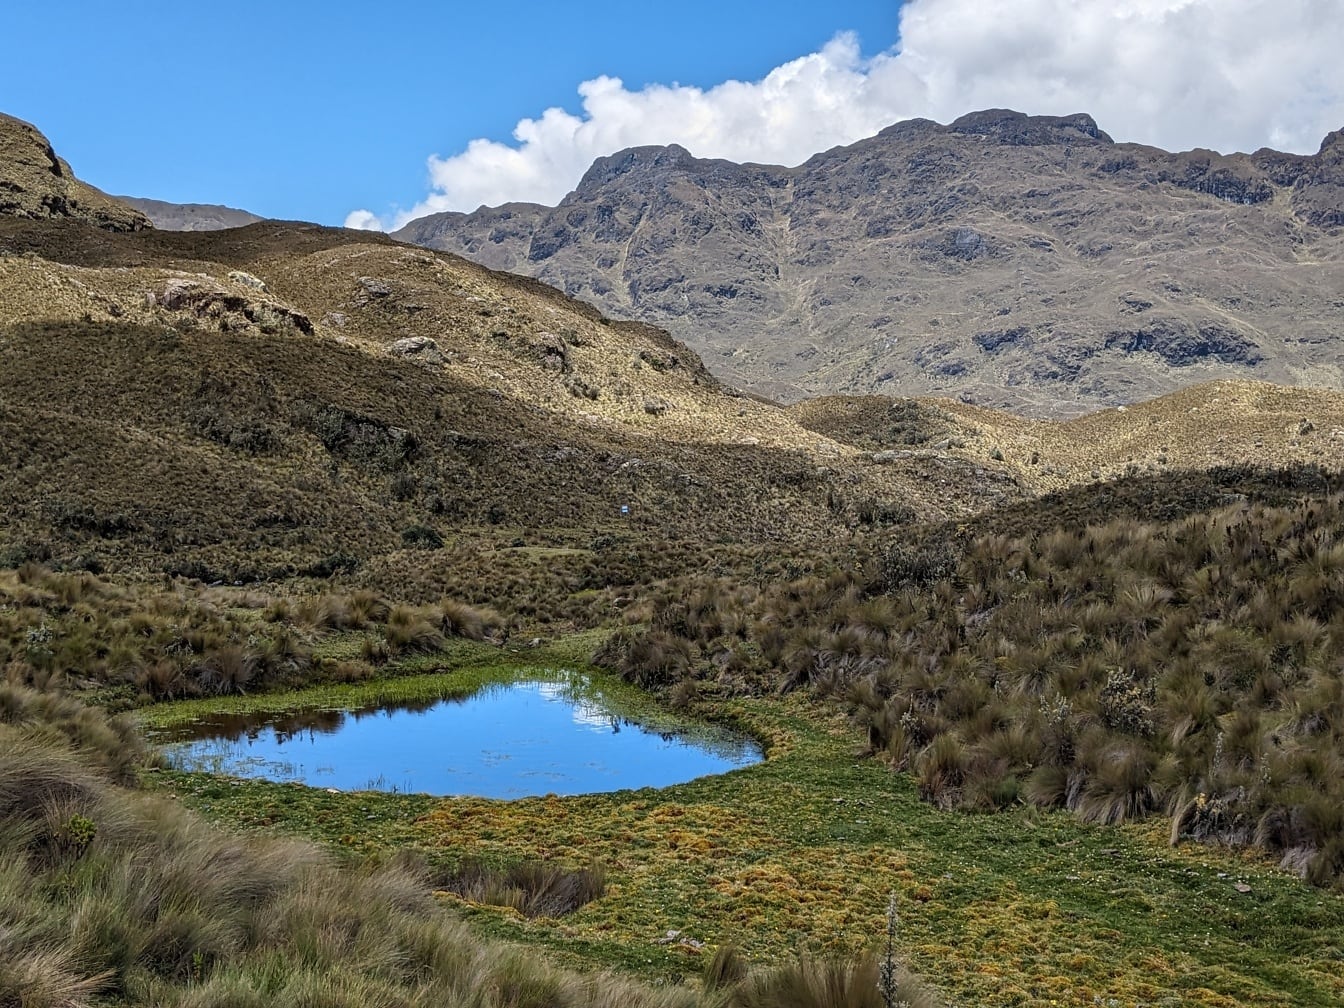 Hồ nhỏ trong một khu vực cỏ ở vùng núi của công viên tự nhiên Cajas ở Ecuador